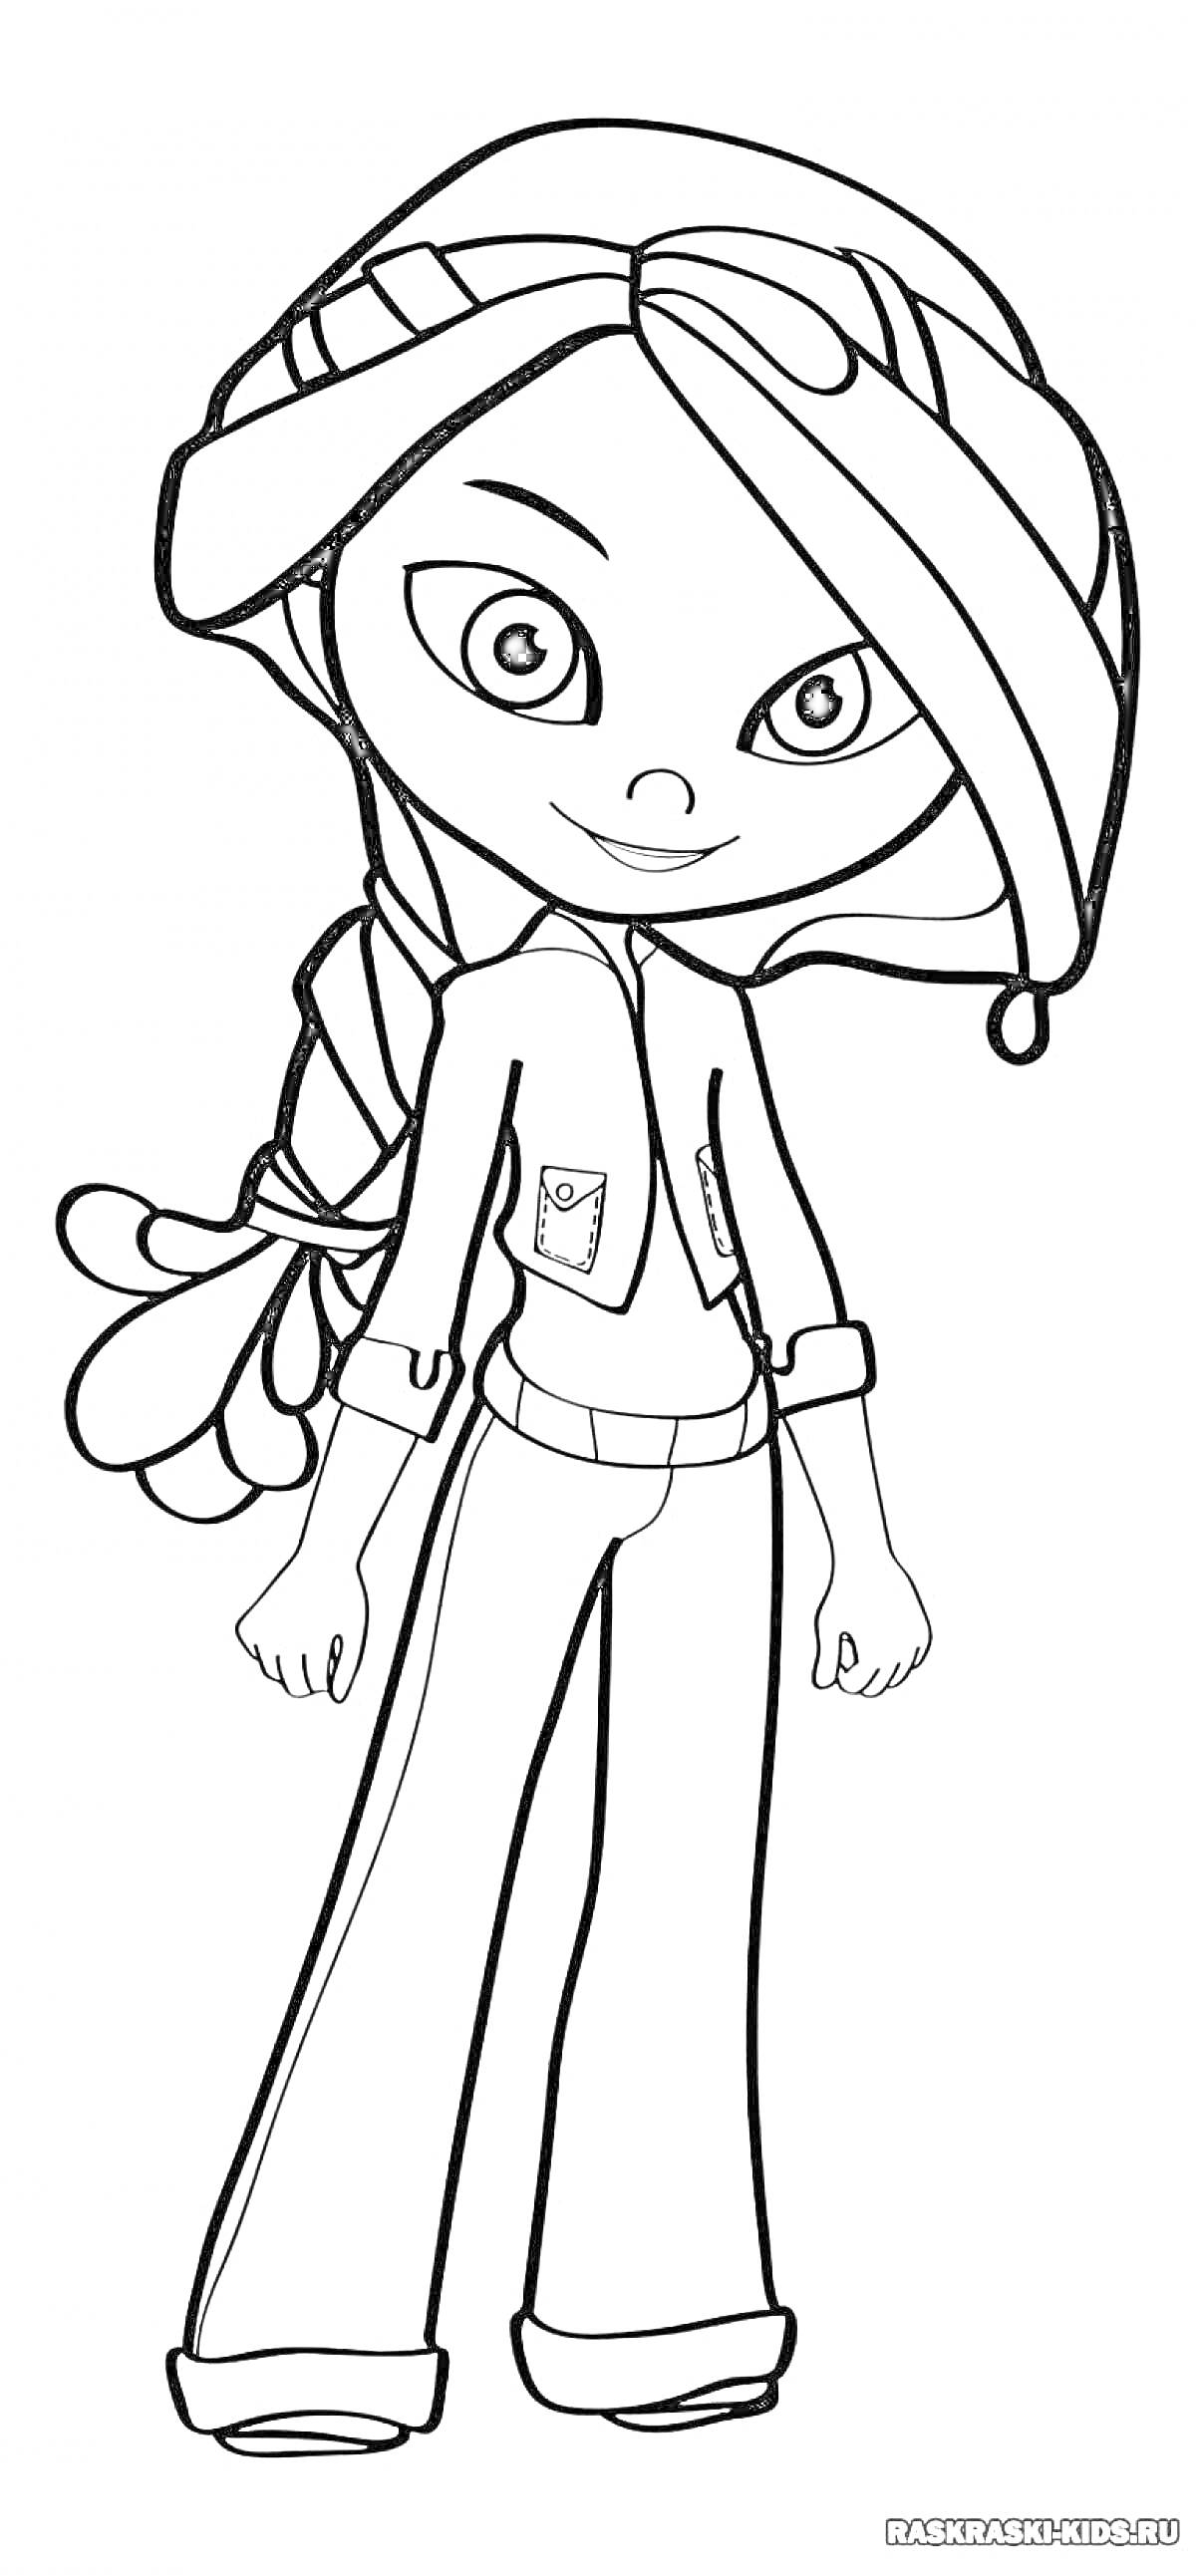 Раскраска Девочка-мультяшный персонаж в костюме с карманами и капюшоном